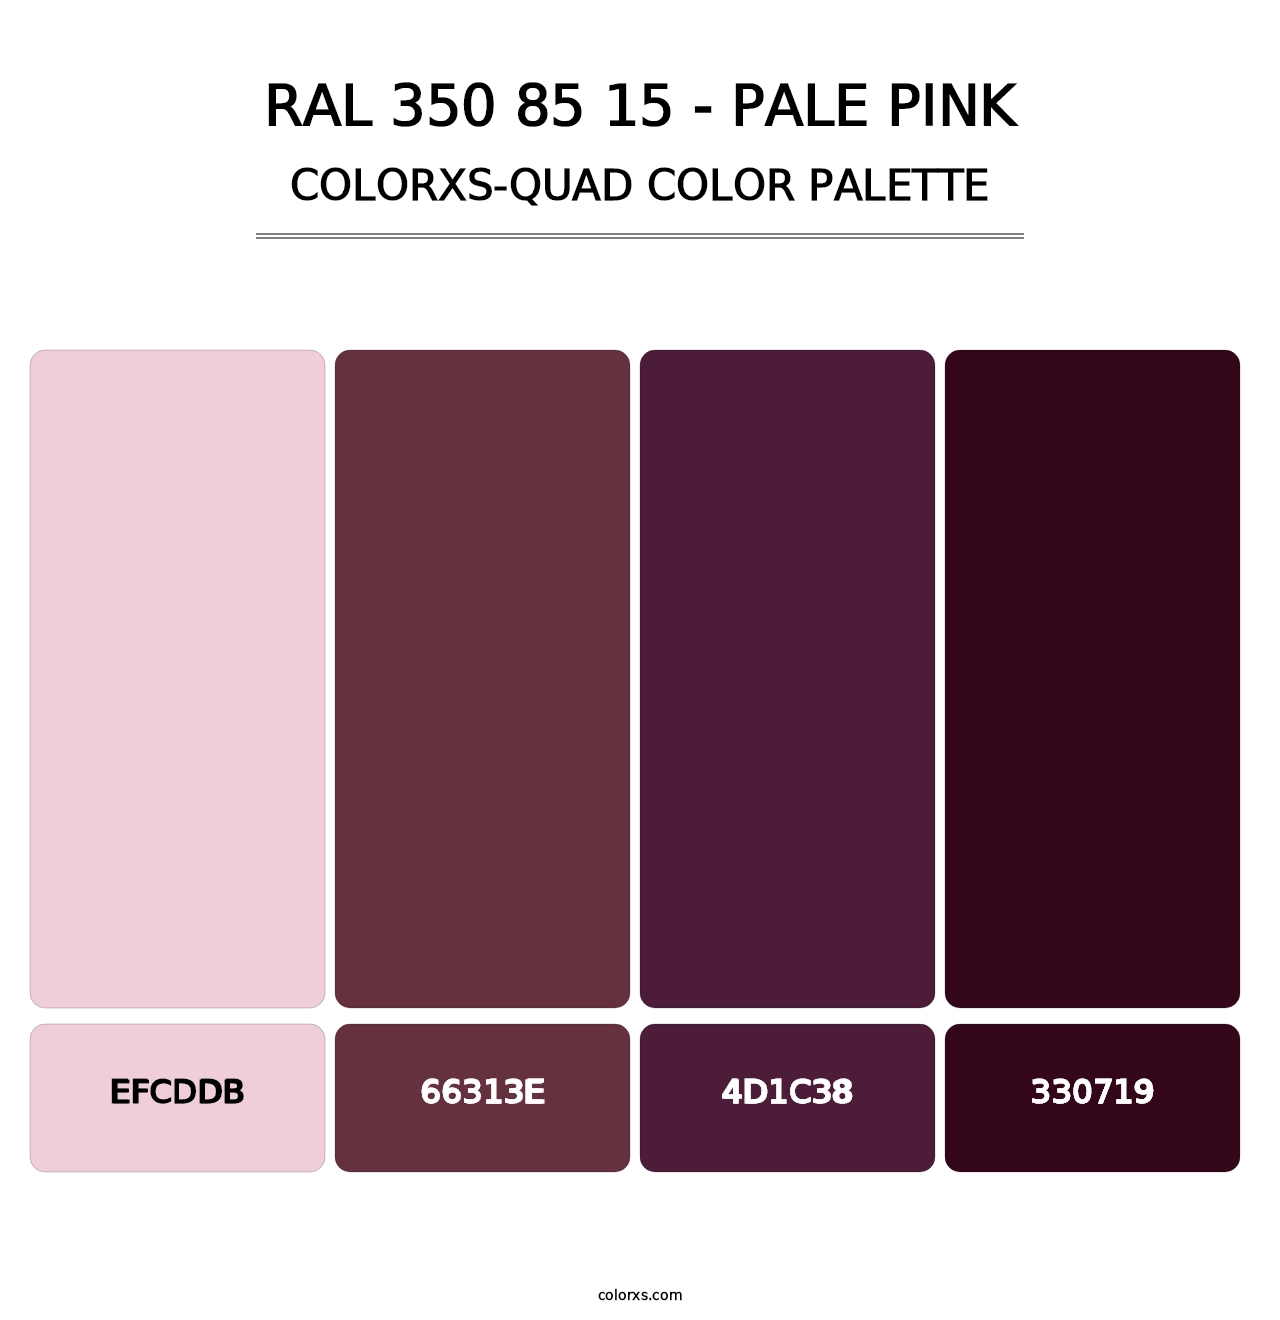 RAL 350 85 15 - Pale Pink - Colorxs Quad Palette